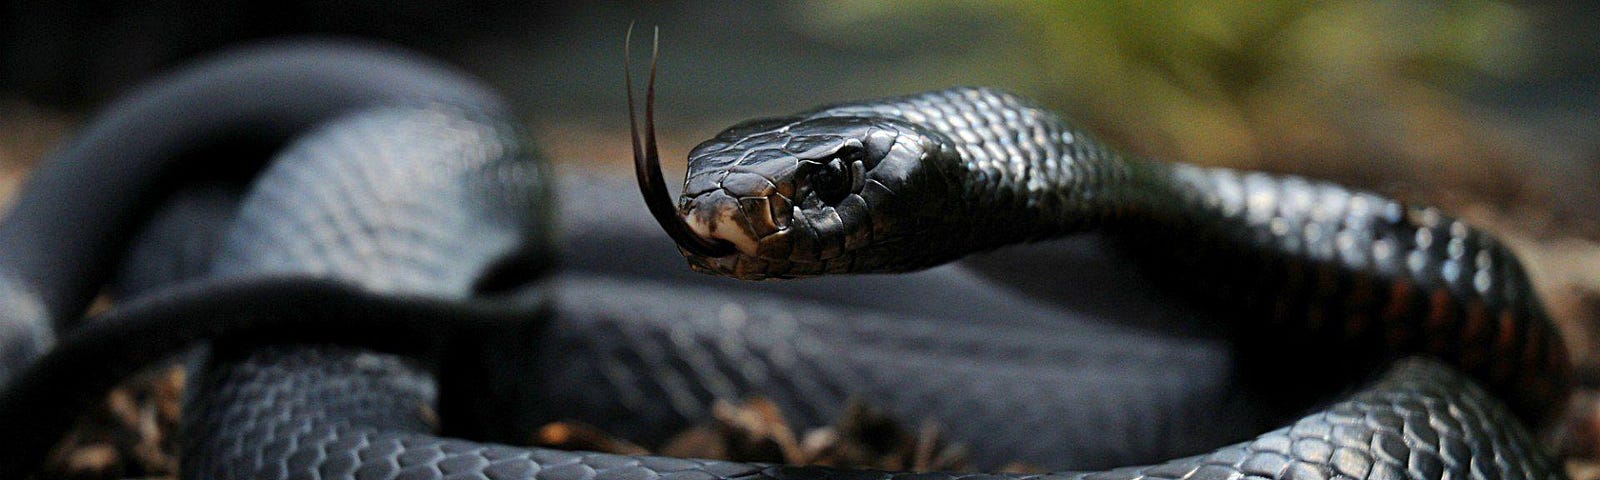 a black mamba snake